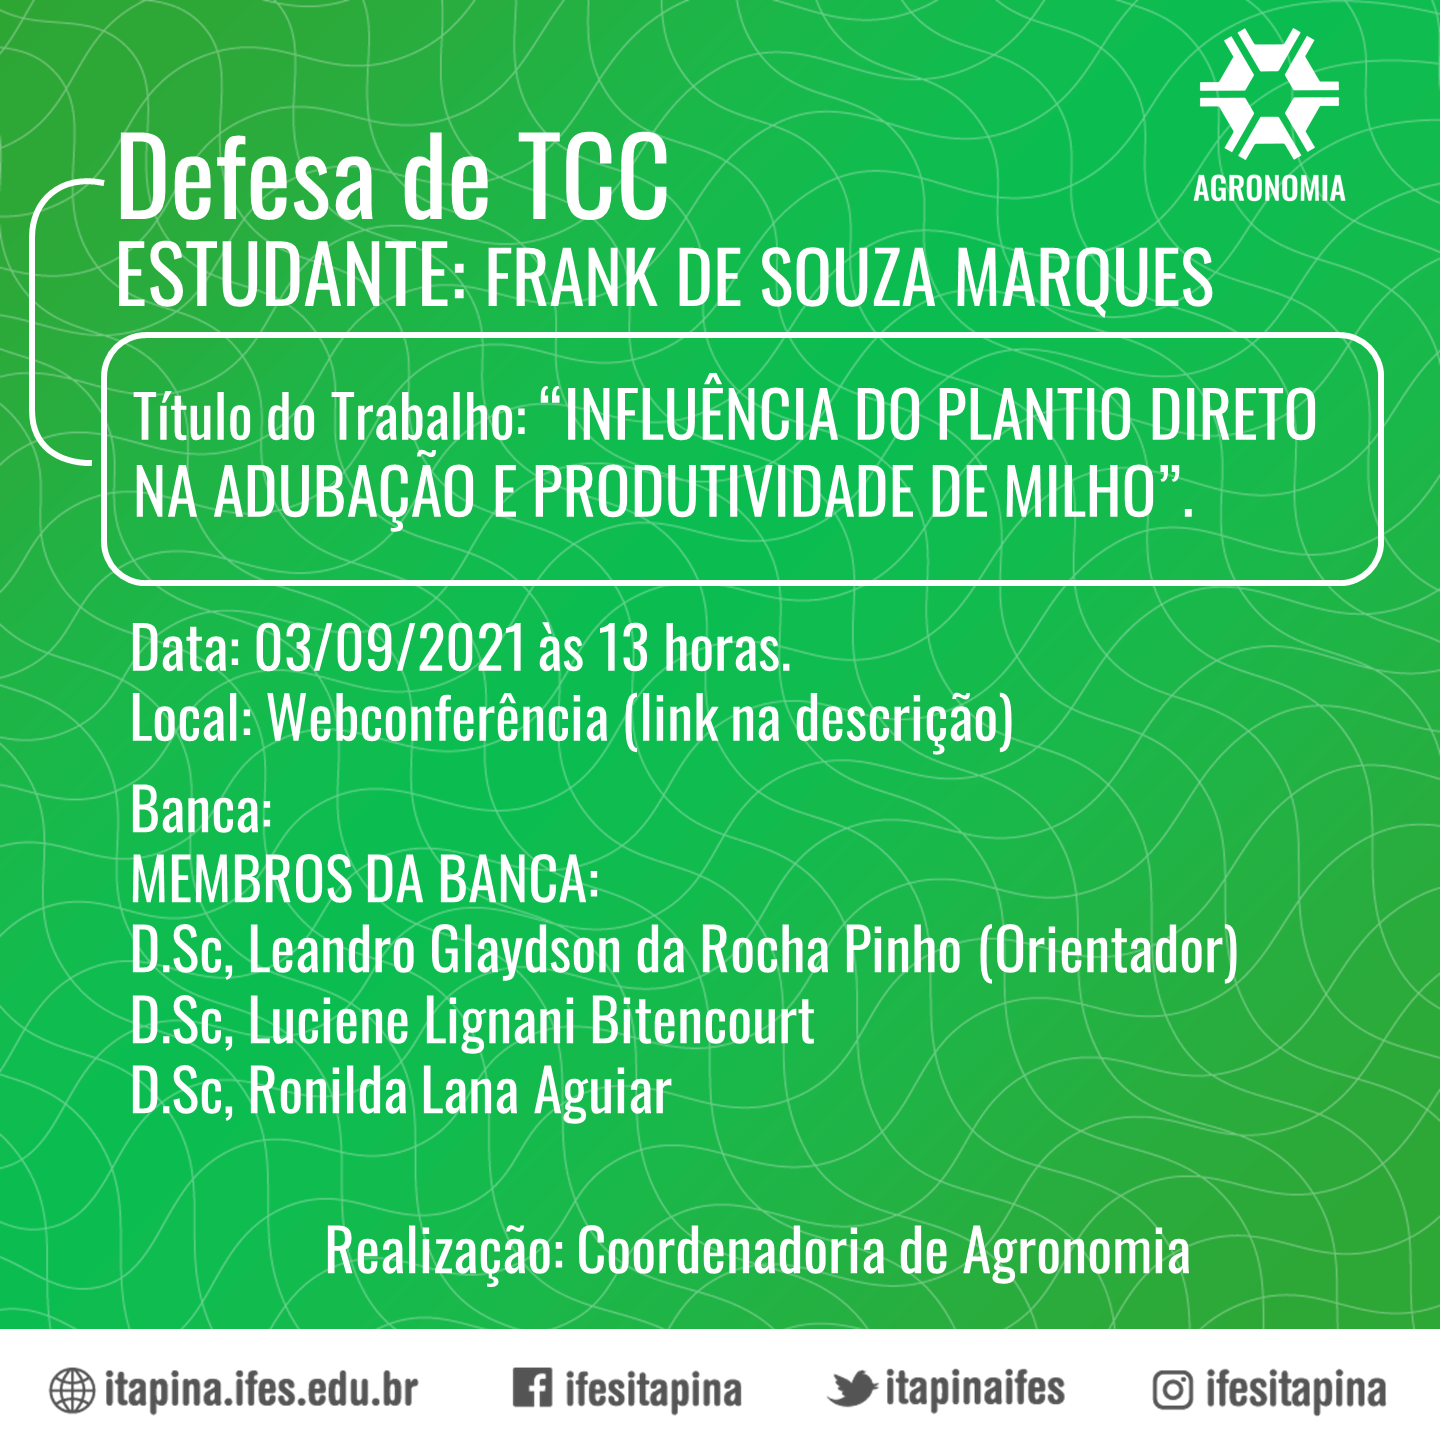 CCSE ITAPINA 107 2020 TCC AGRONOMIA FRANK DE SOUZA MARQUES